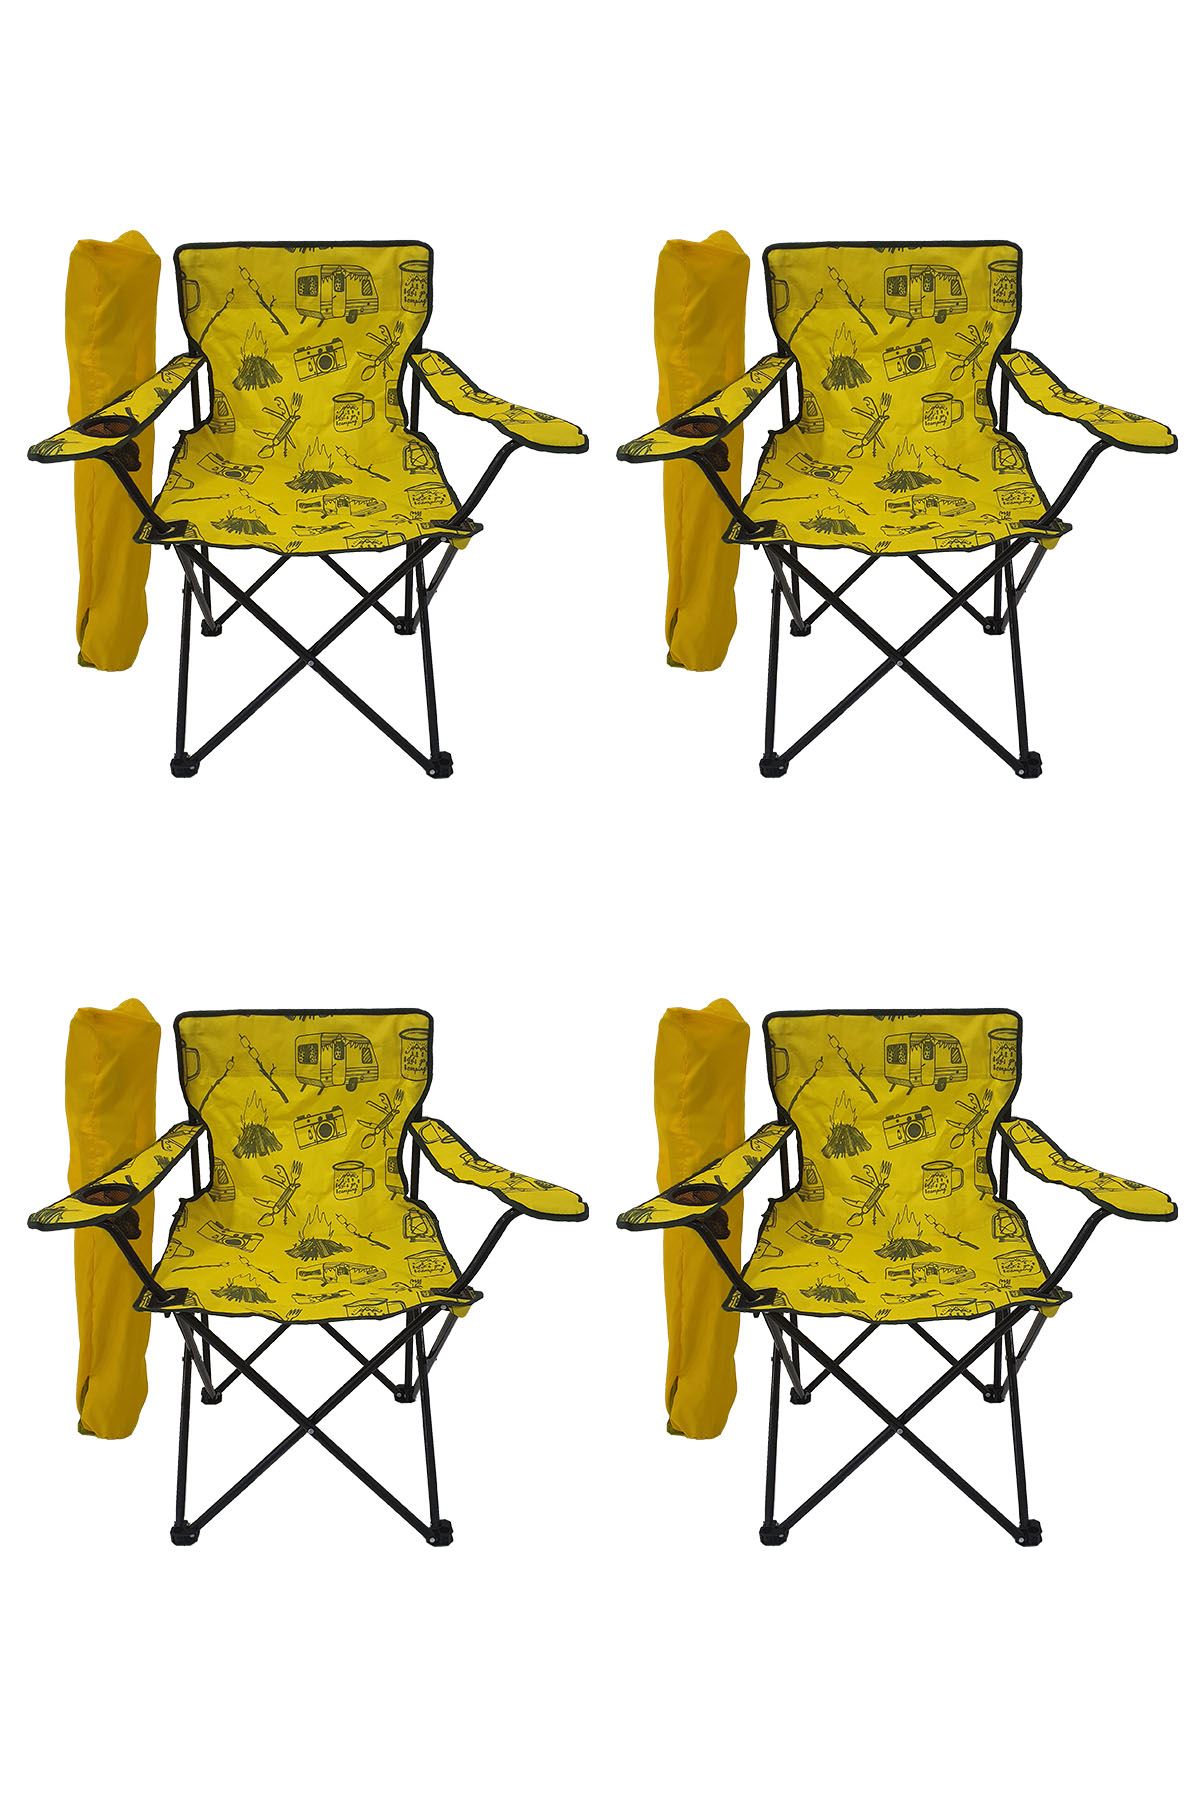 Bofigo 4 Adet Kamp Sandalyesi Katlanır Sandalye Bahçe Koltuğu Piknik Plaj Sandalyesi Desenli Sarı